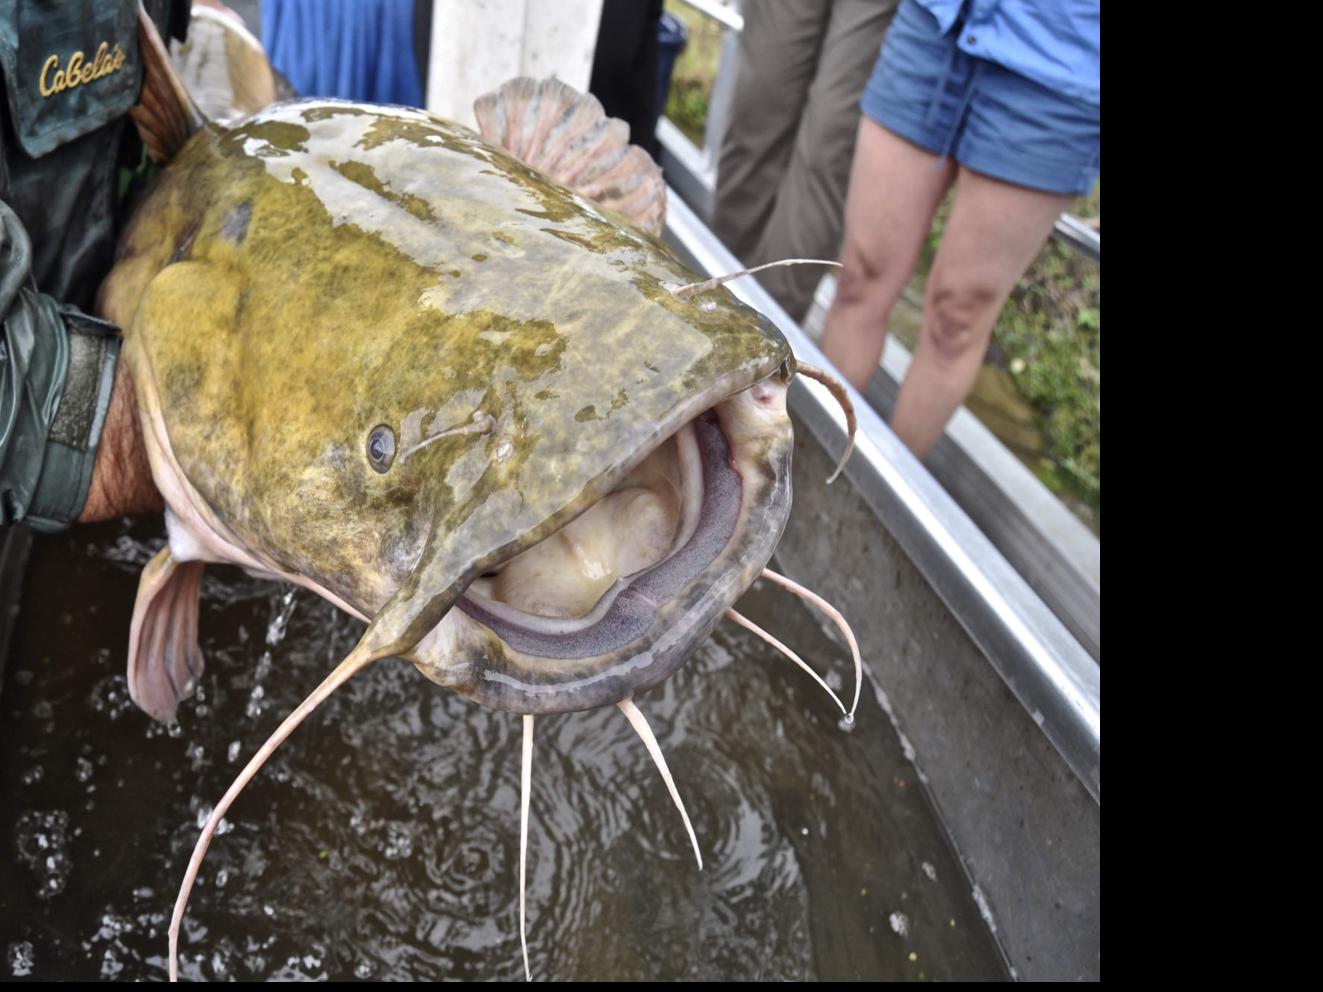 Half ton of illegal catfish seized from Garyville man, authorities